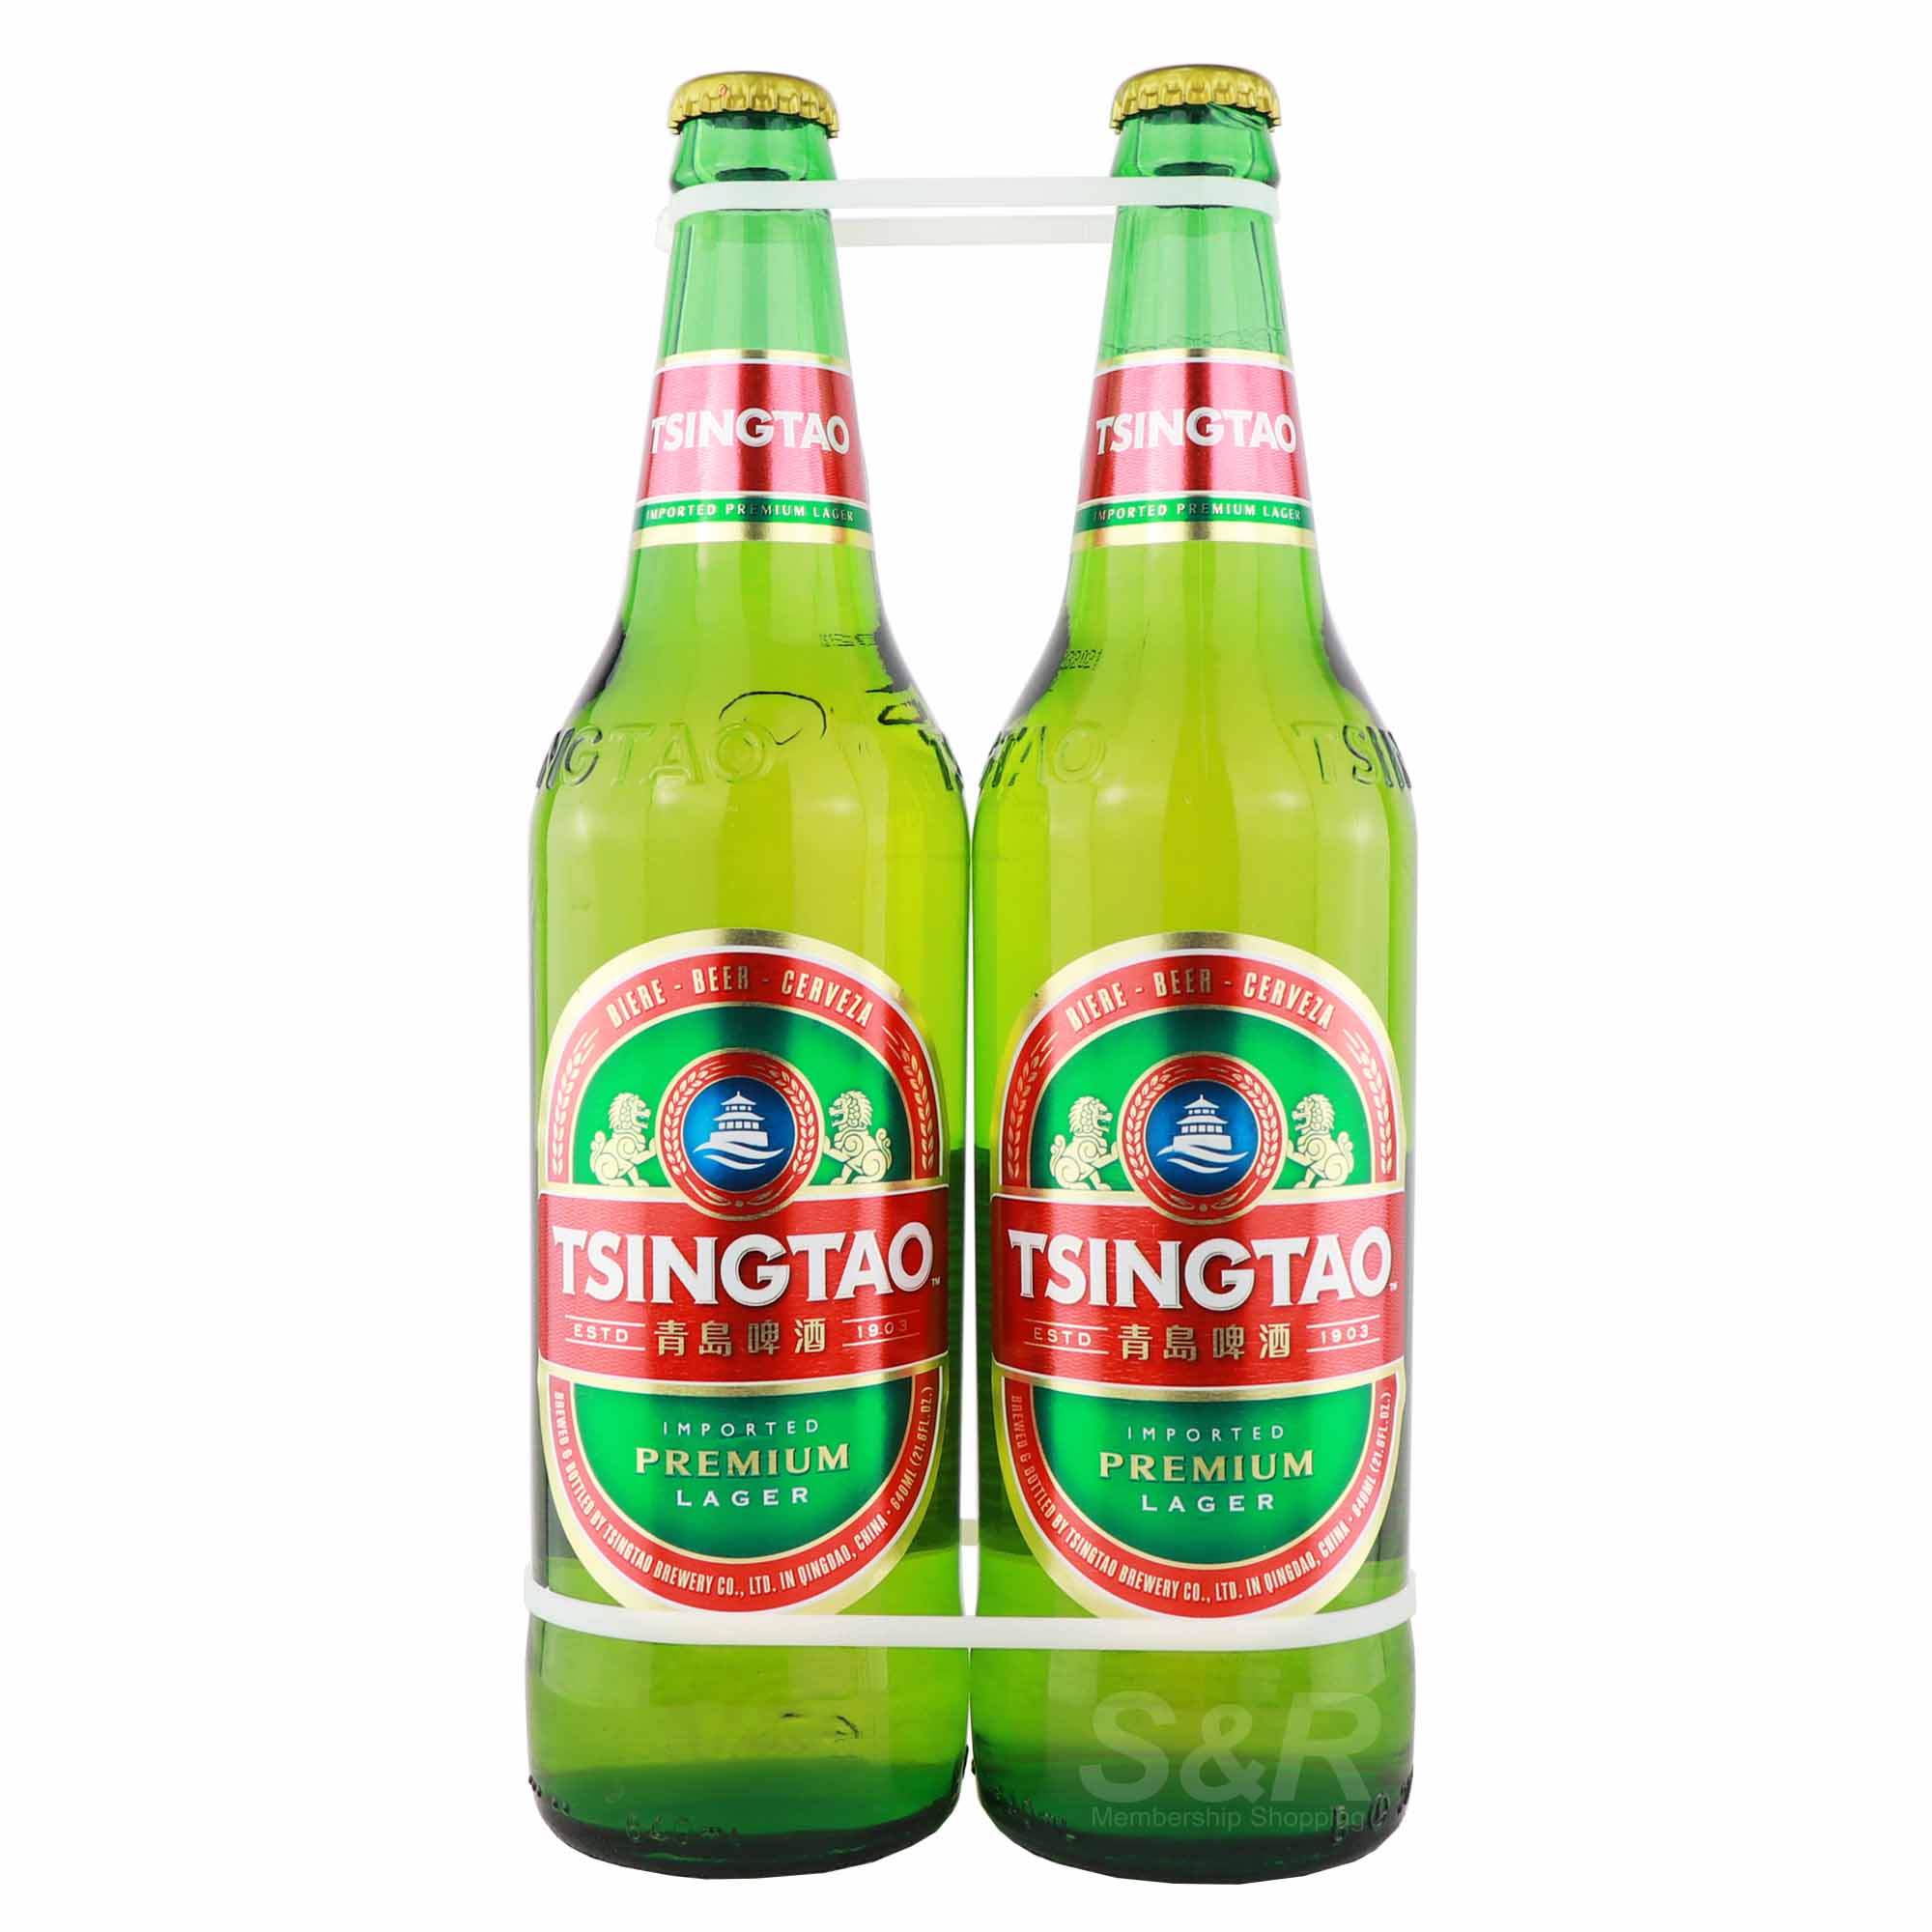 Tsingtao Imported Premium Lager Beer 2 bottles